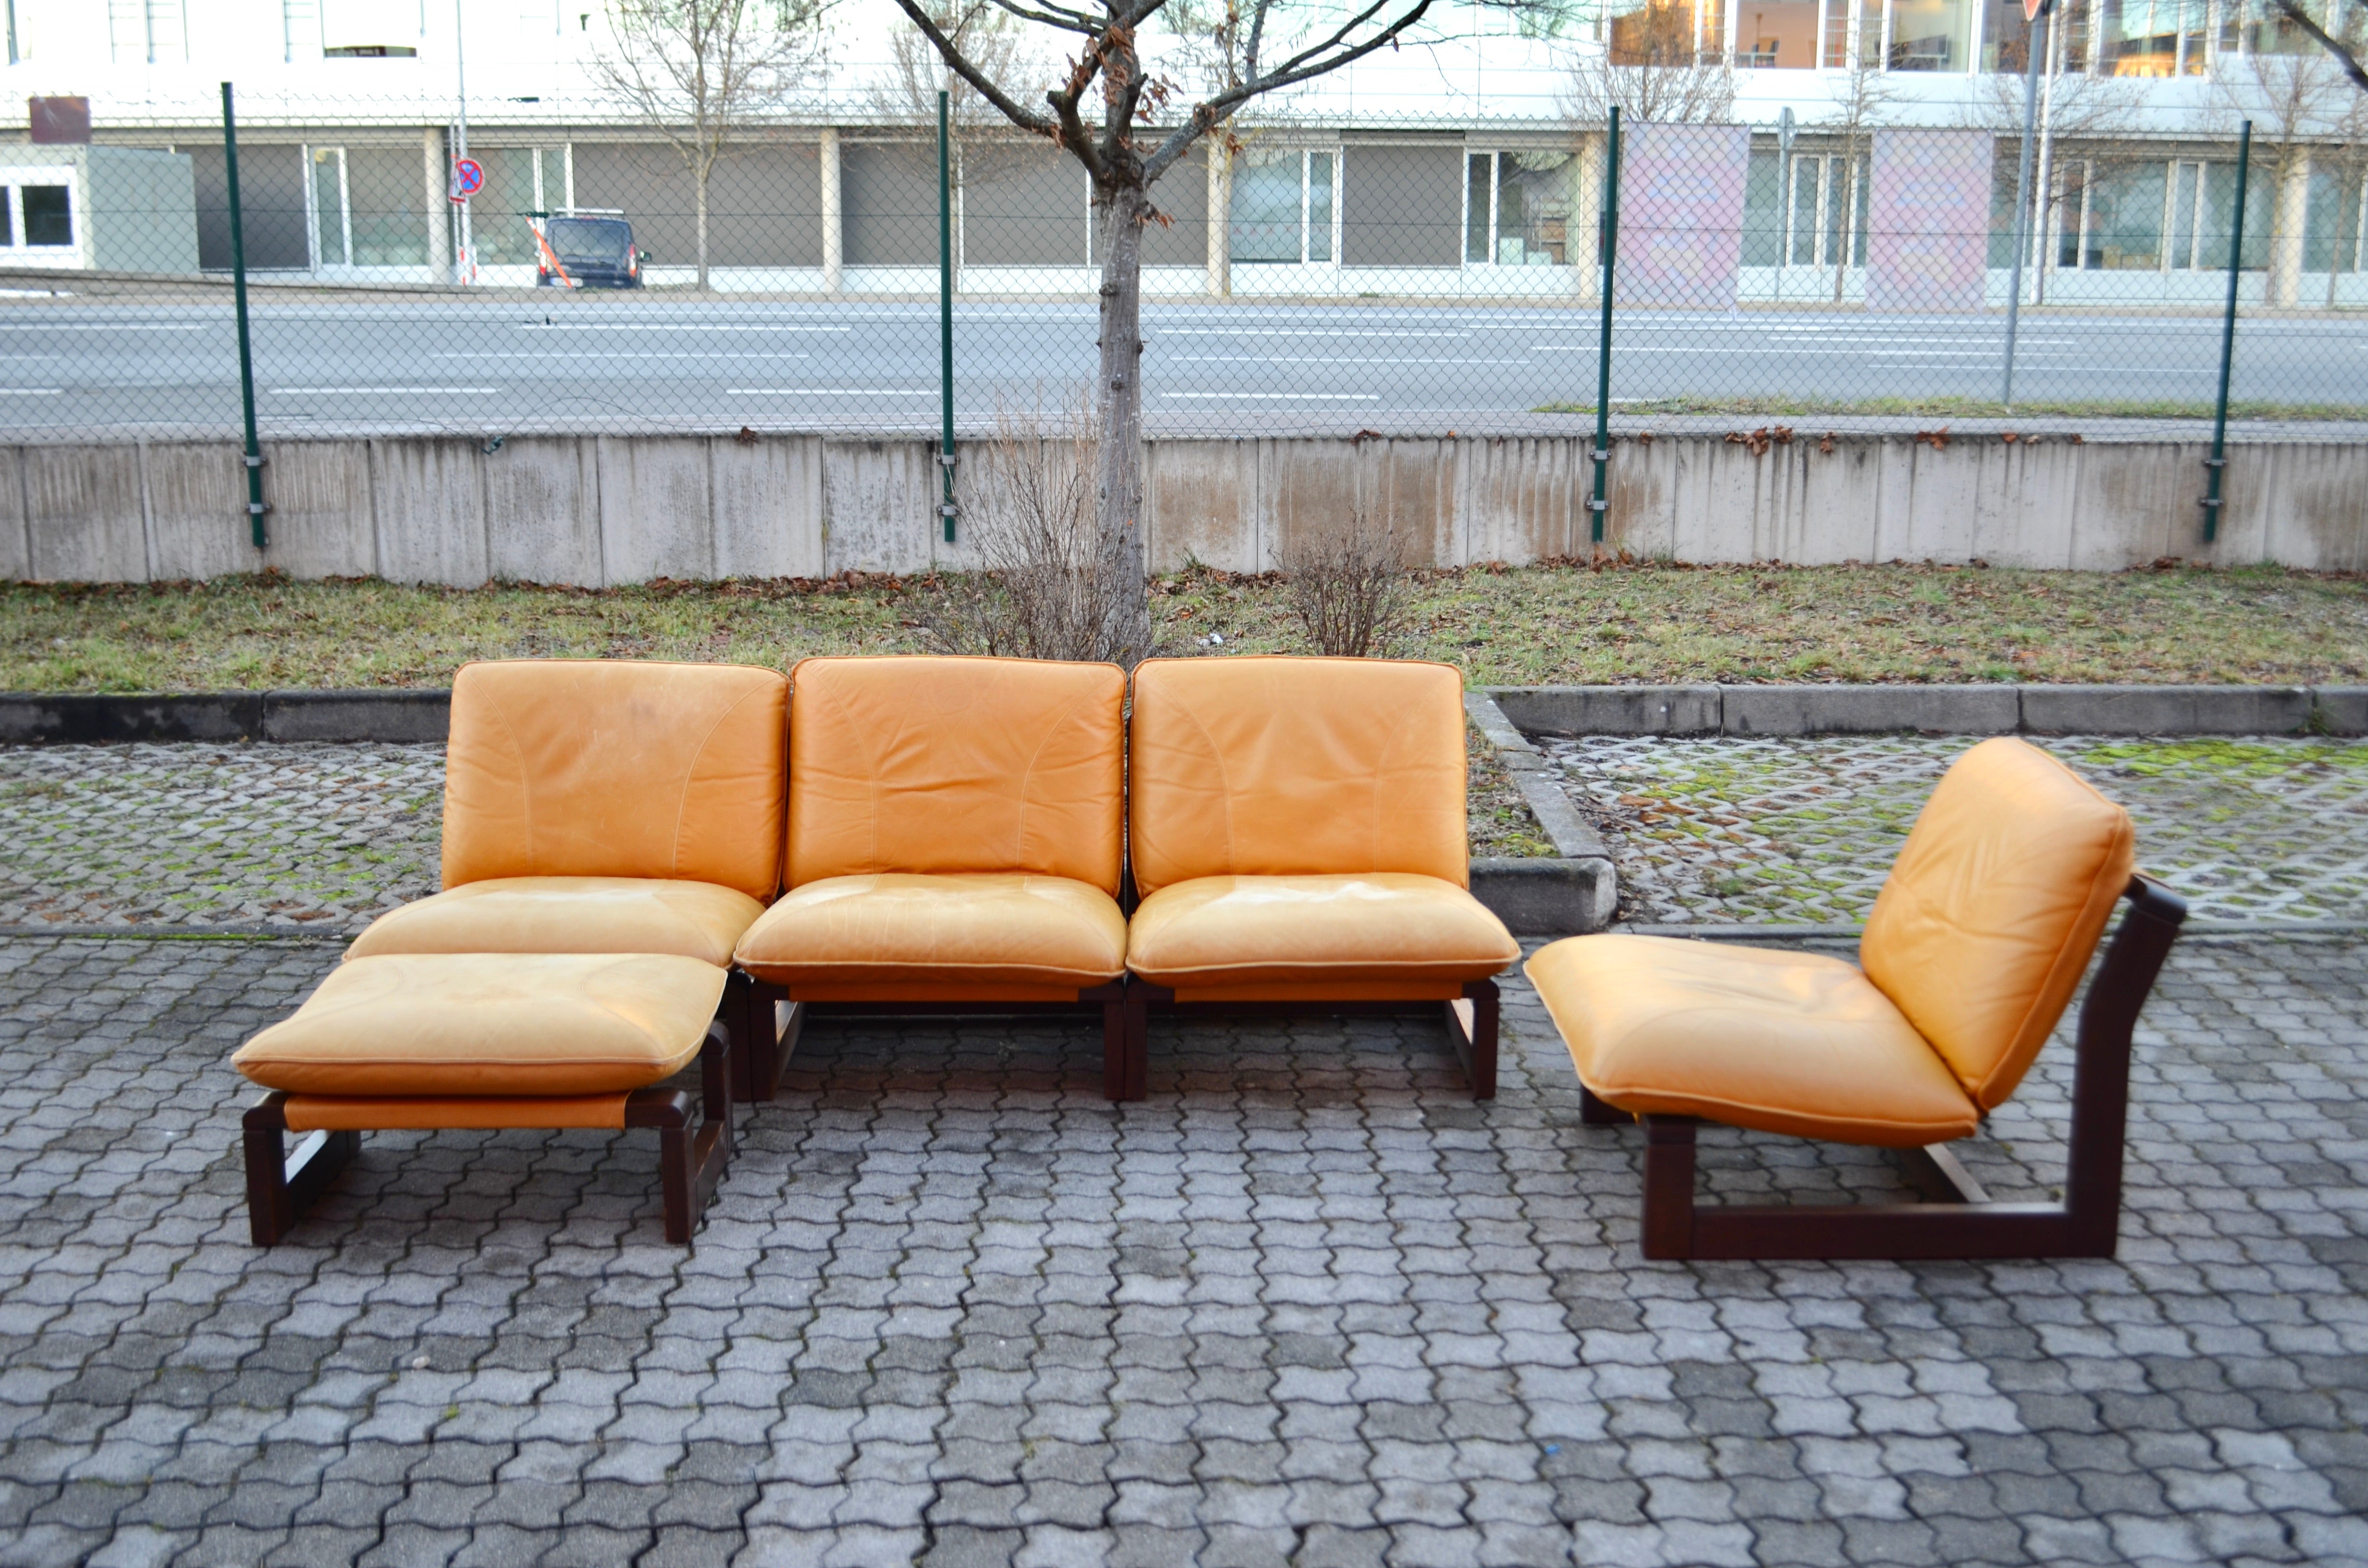 Ce magnifique et unique canapé sectionnel modulaire des années 70 a été fabriqué en Allemagne par Dreipunkt International.
La forme Sling est faite de cuir cognac et de toile.
Les coussins amples et épais l'ont rendu très confortable. Il s'agit d'un